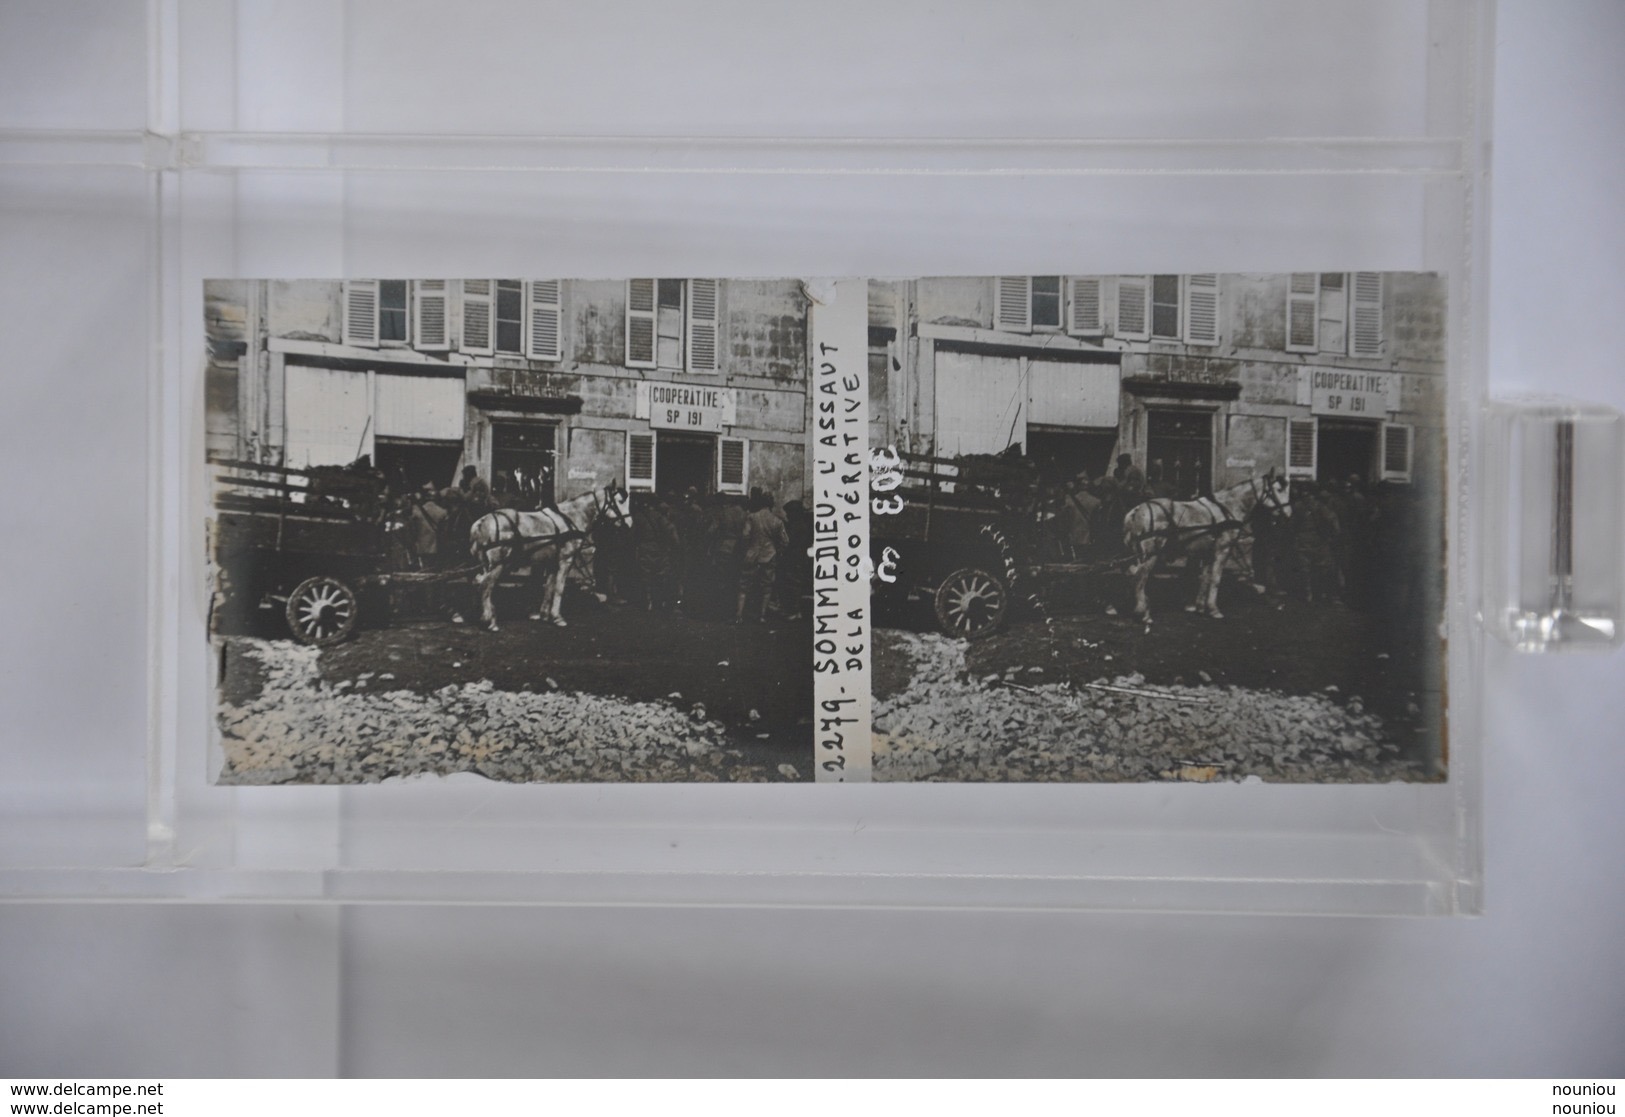 Rare collection 136 vues stéréoscopiques plaques de verre WW1 Grande Guerre Belgique - Zeppelin Tank Train Gare Tranchée